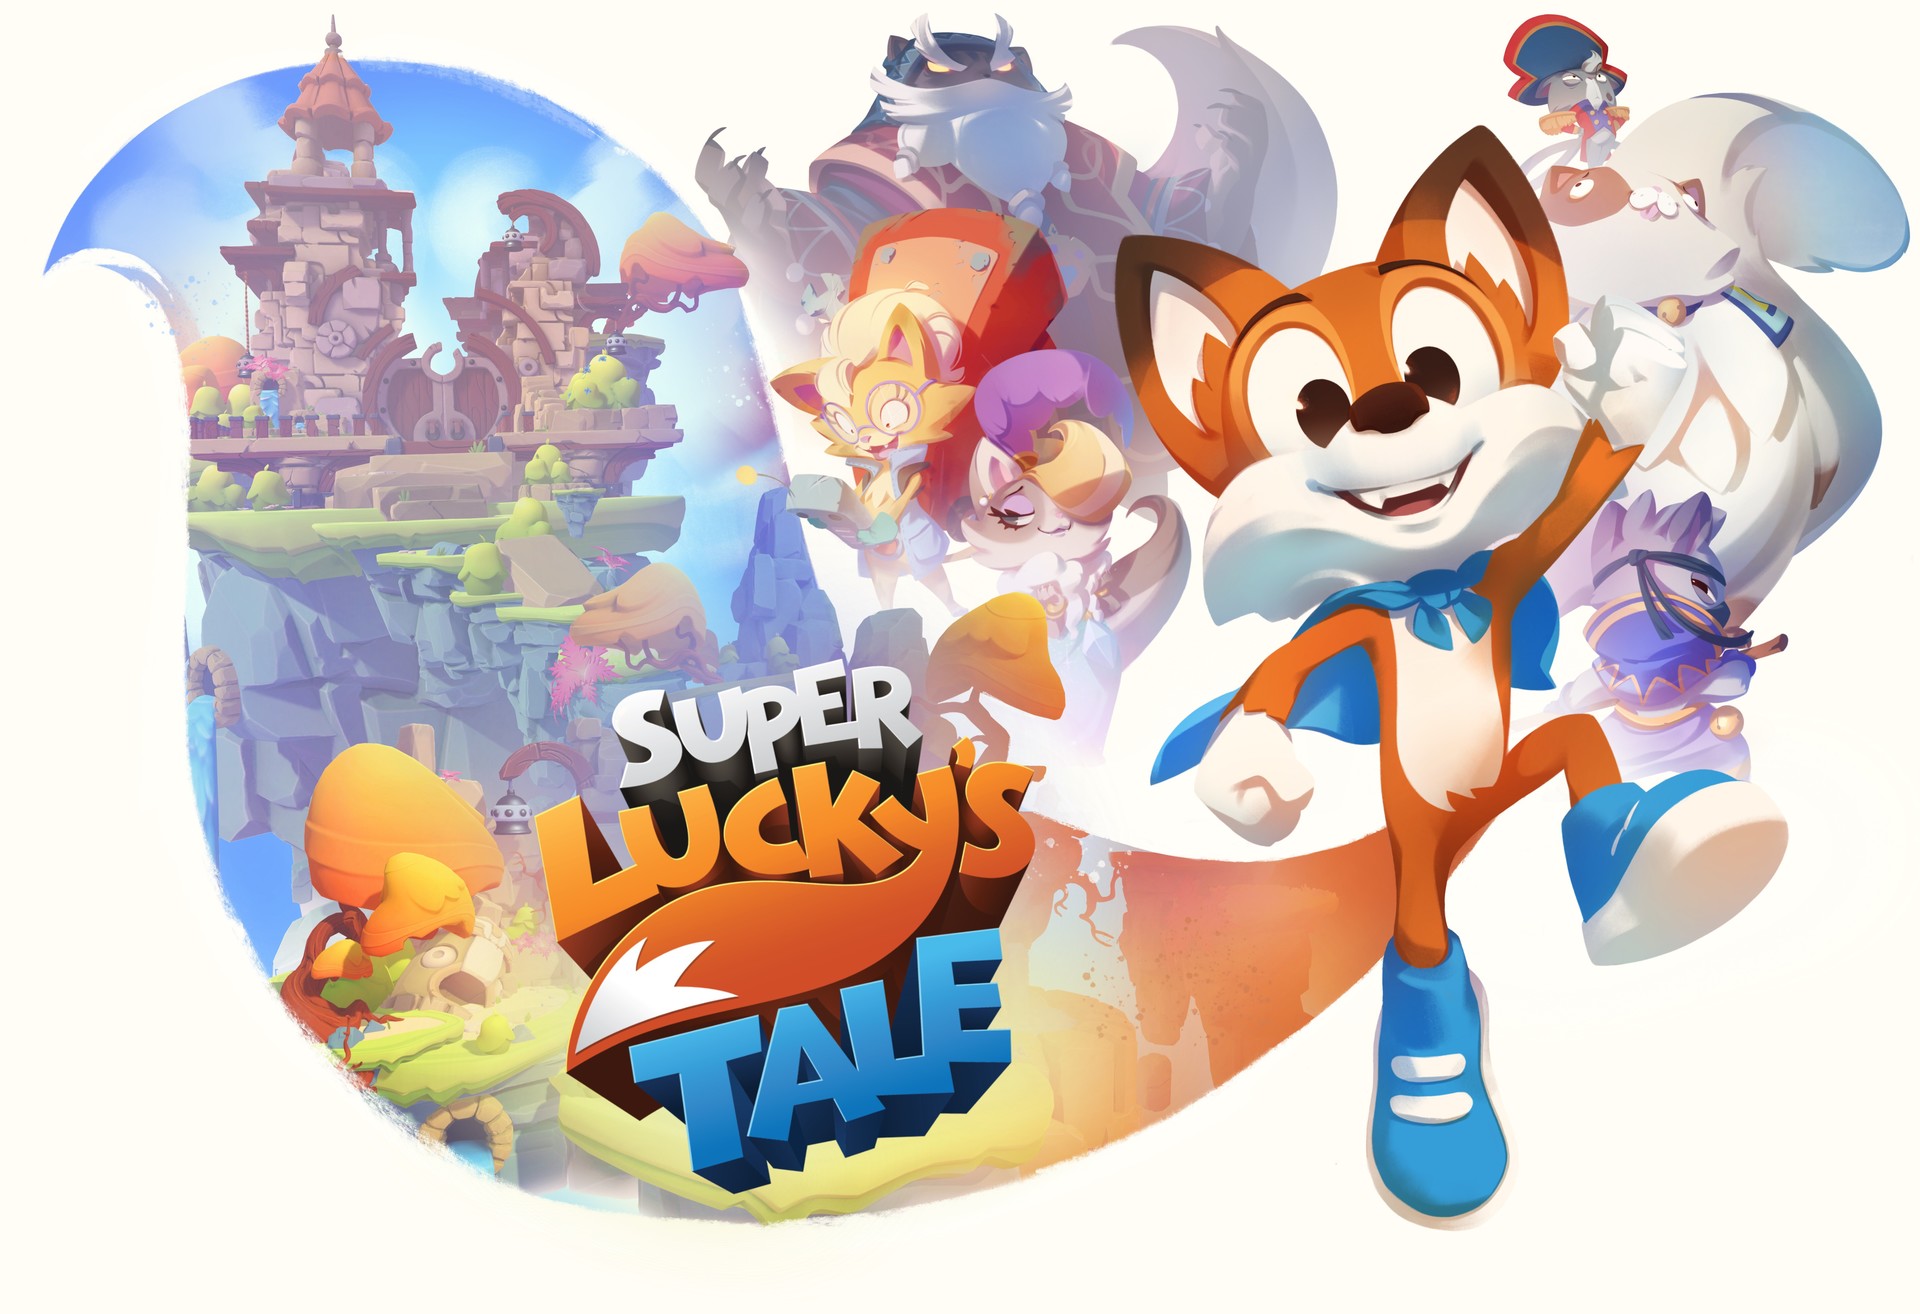 O jogo “Super Lucky’s Tale” é diversão com plataforma para toda a família